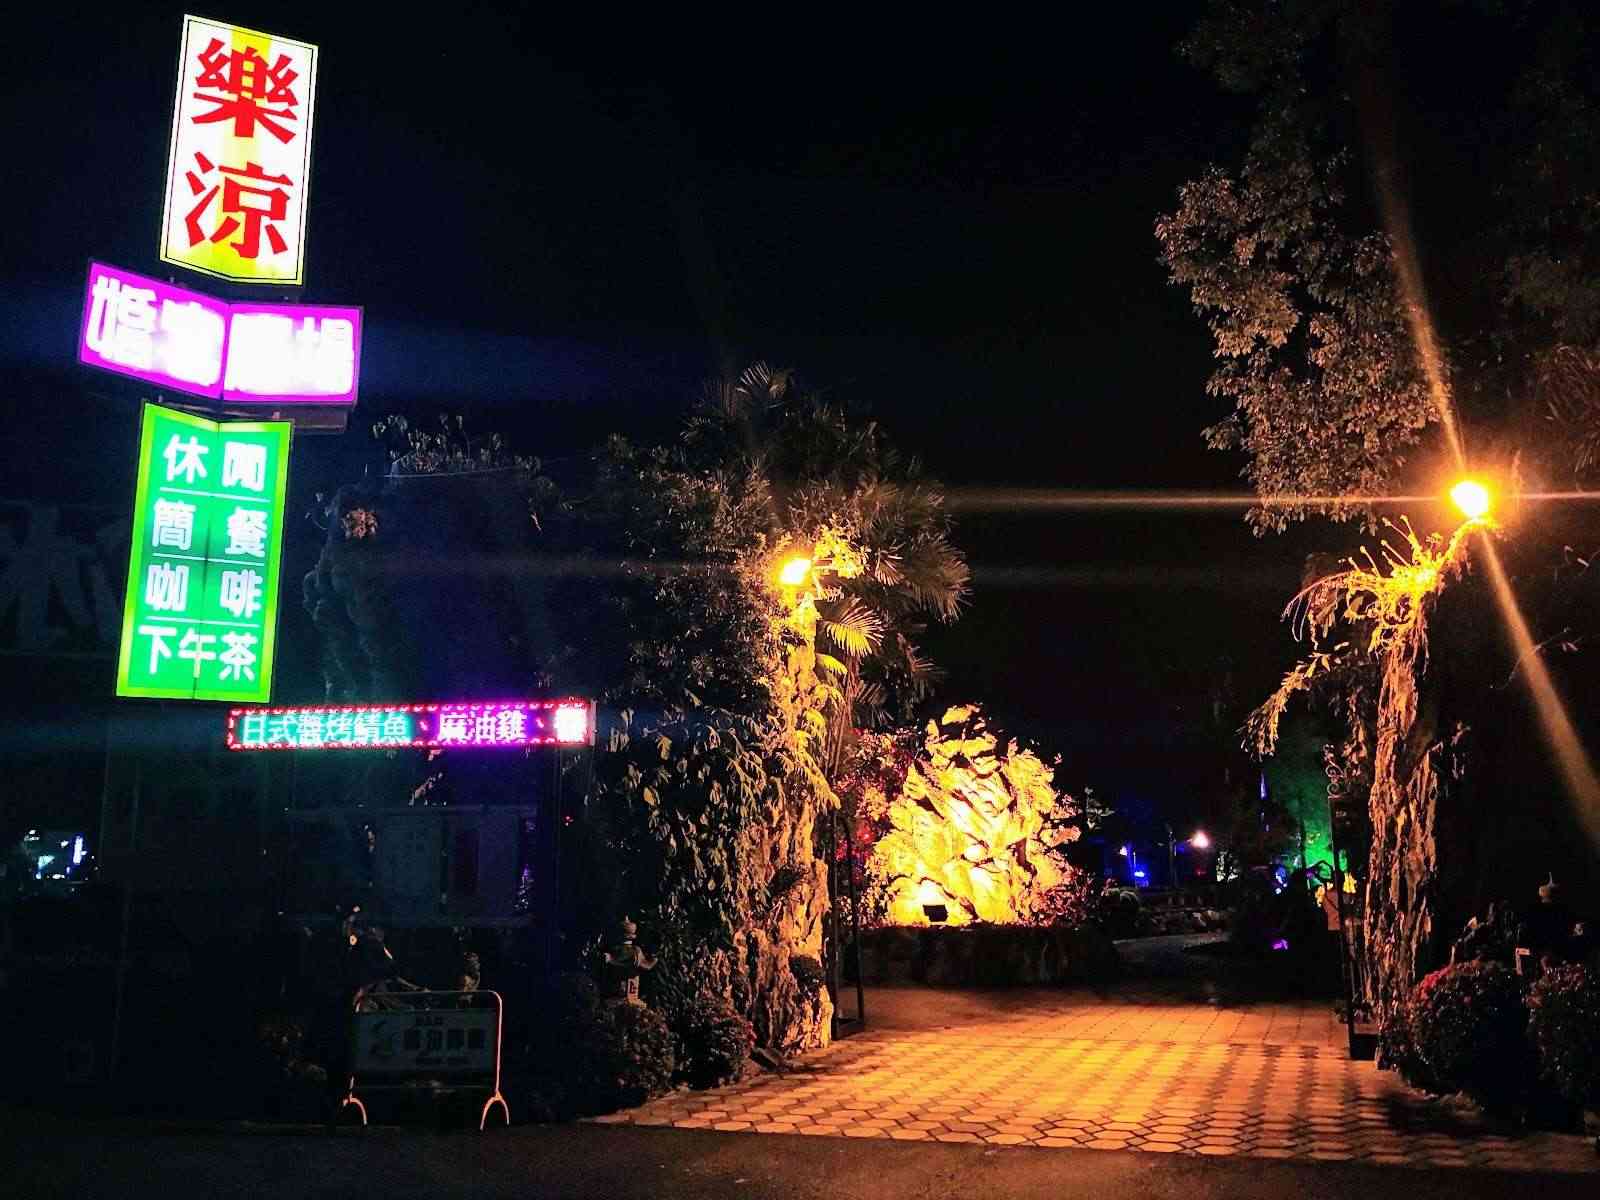 樂涼園藝餐廳/ 攝影者: 寧浚騰

(由第三方資訊提供)